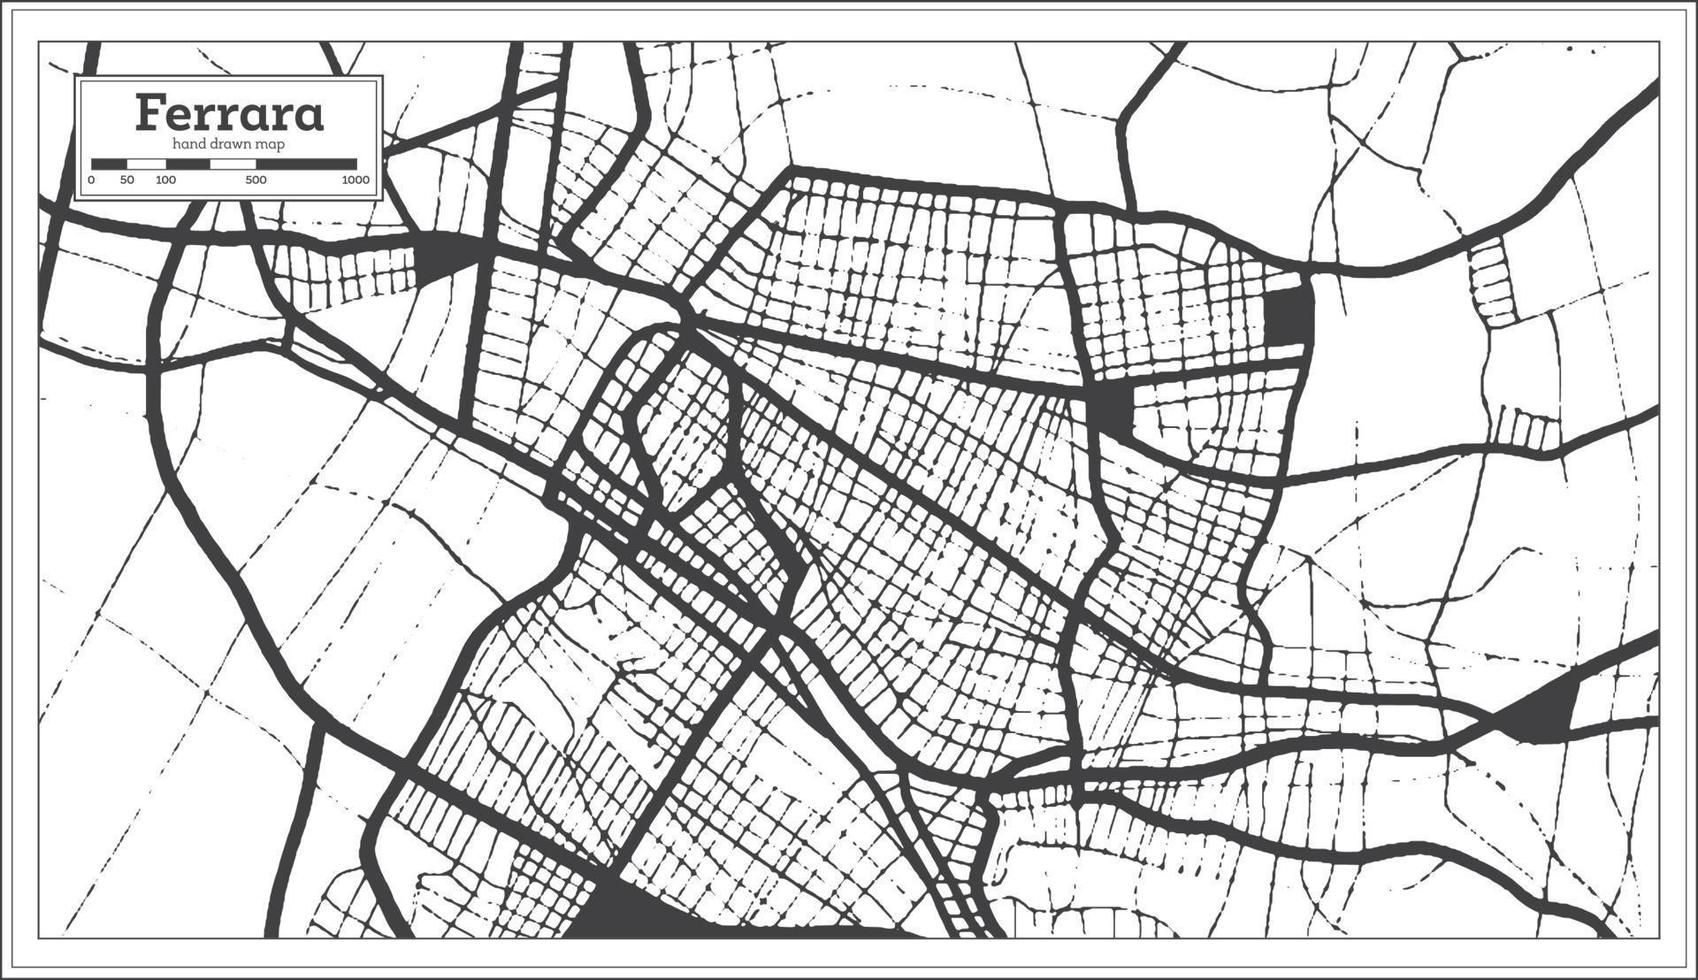 mapa de la ciudad de ferrara italia en color blanco y negro en estilo retro. esquema del mapa. vector